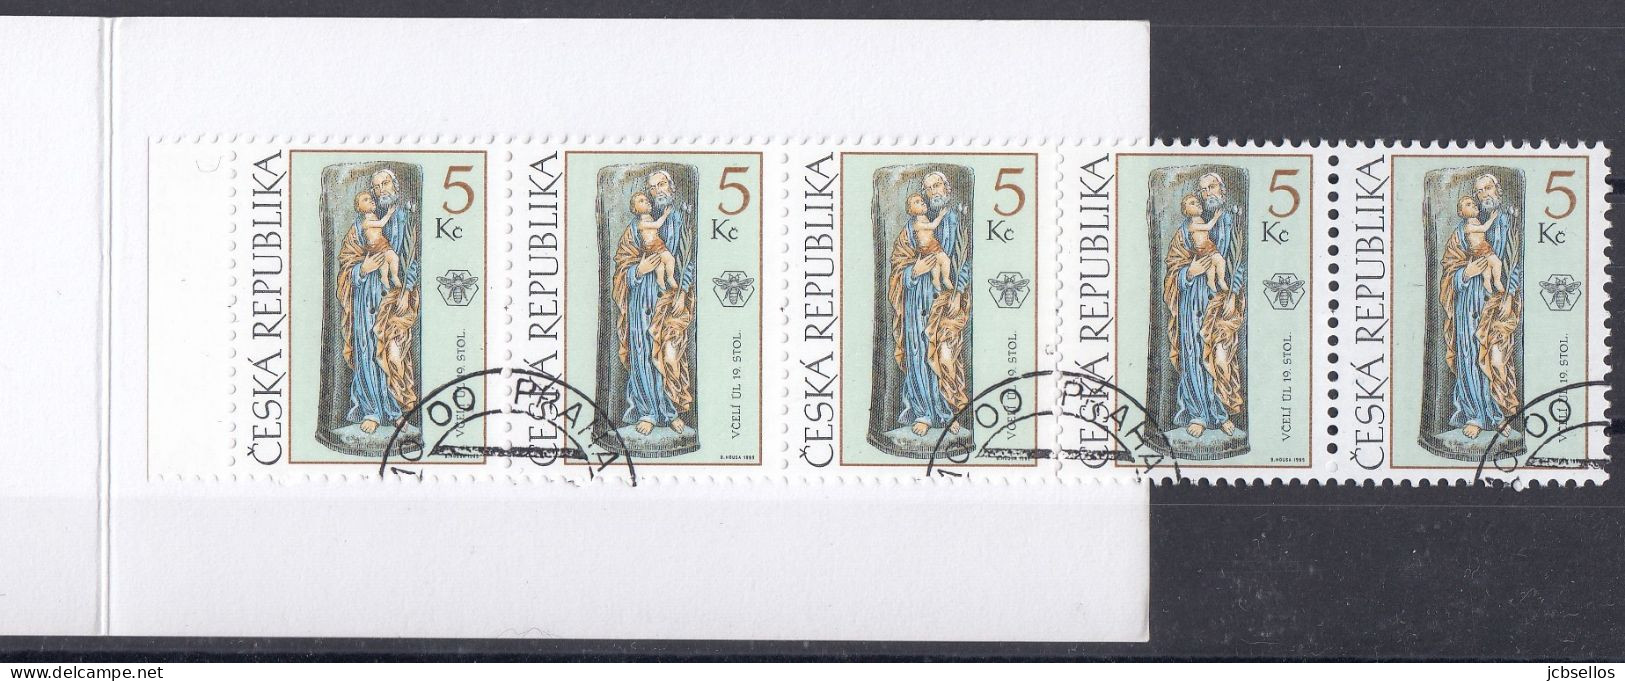 REPUBLICA CHECA 1999 Nº C-222 USADO - Used Stamps